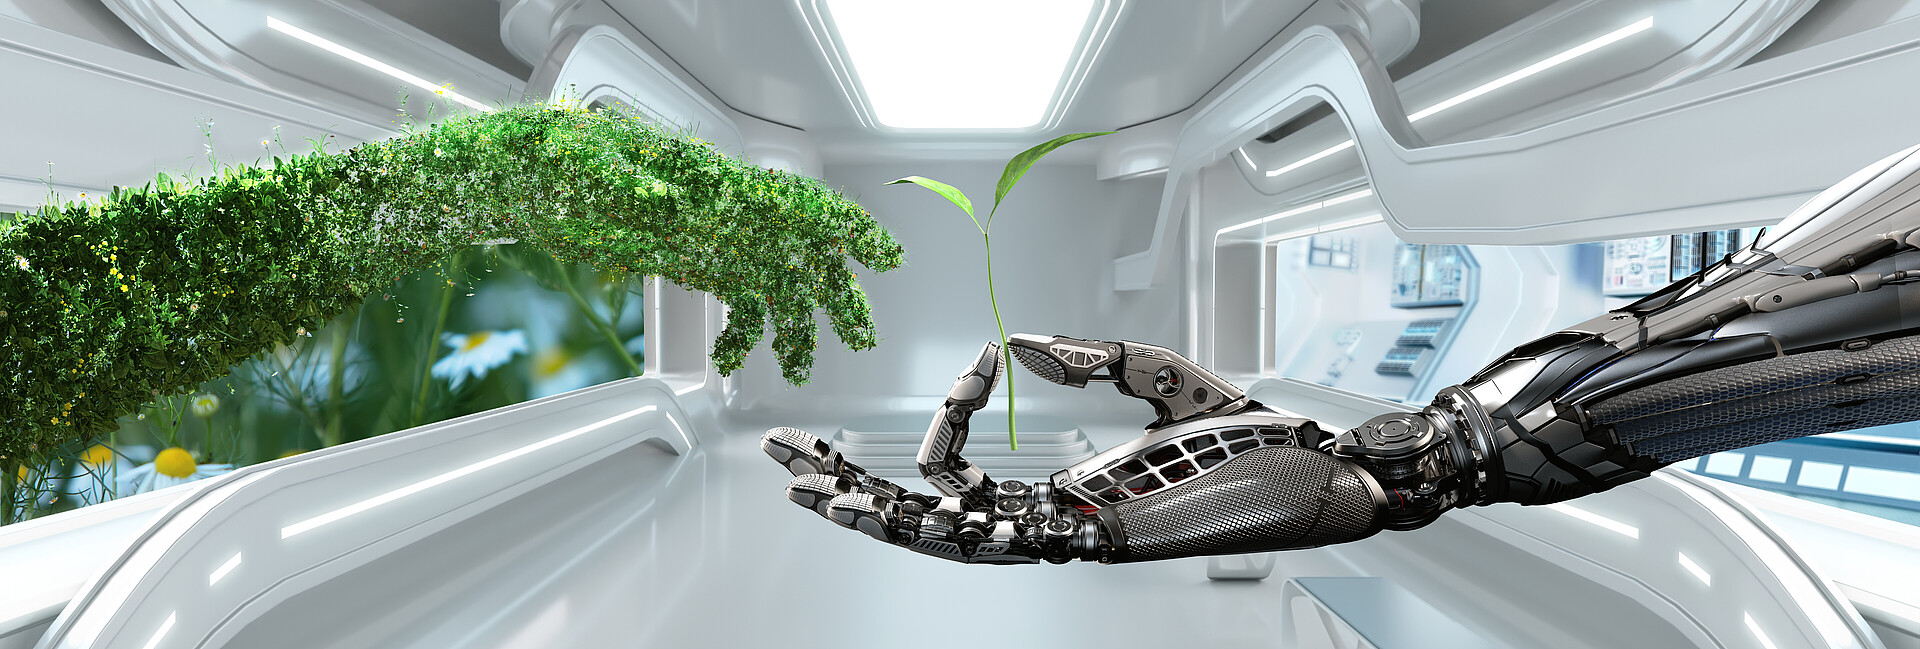 Das Bild zeigt zwei Hände in einem Labor der Zukunft. Die linke Hand wird aus zahlreichen Pflanzenteilen gebildet und steht für die Naturwissenschaften, die rechte Hand stammt von einem Roboter, der ein kleines Pflänzchen in den Fingern hält. Diese Hand symbolisiert die Technik.